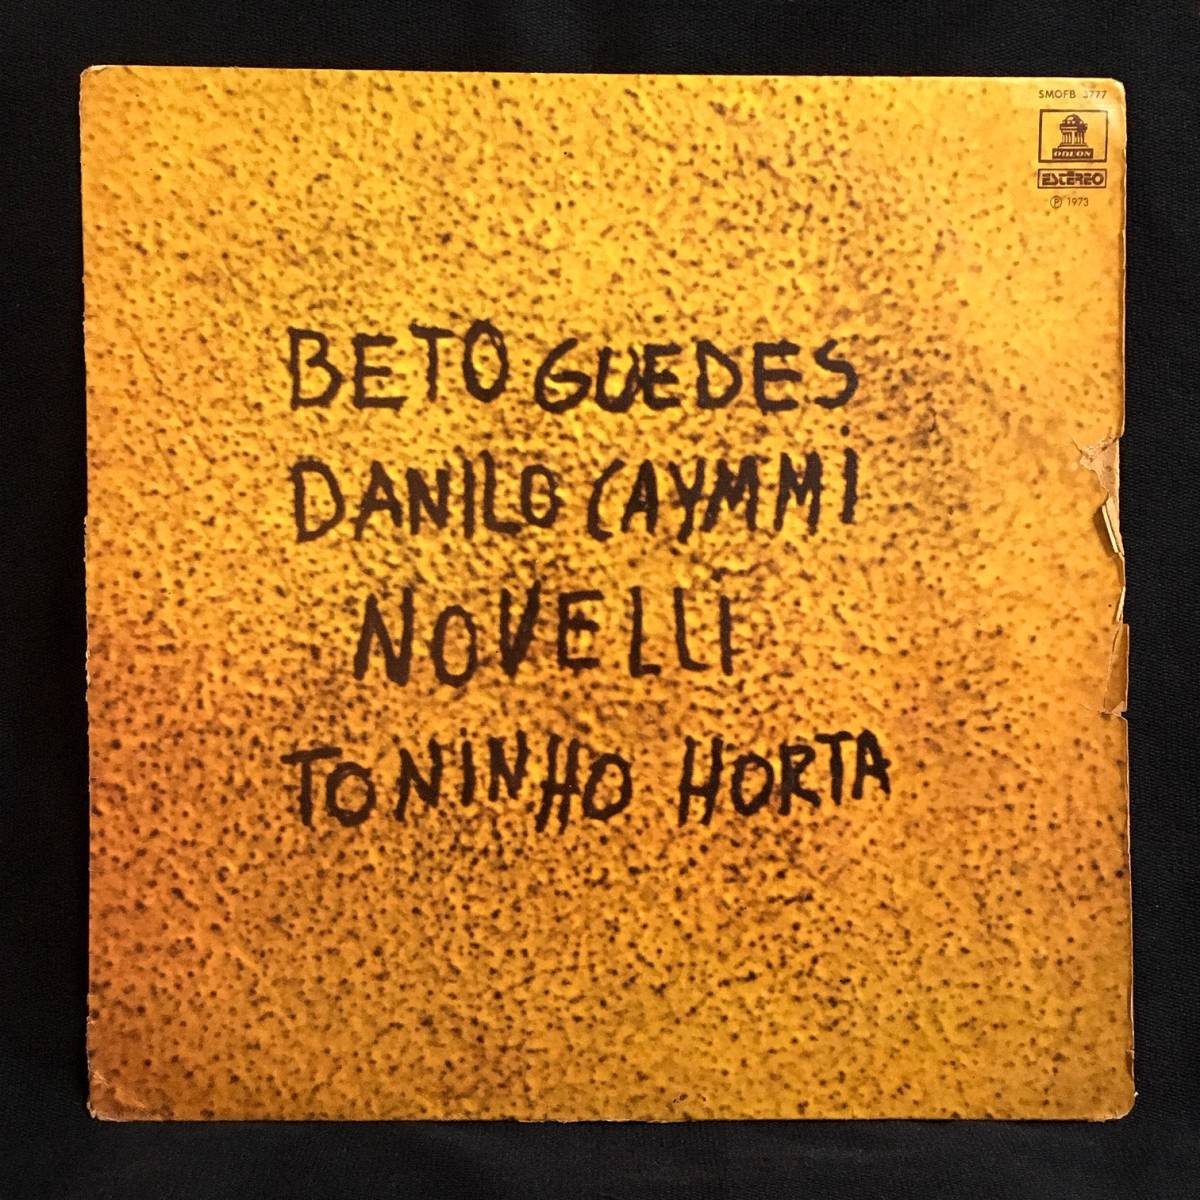 【1973年オリジナル】Beto Guedes, Danilo Caymmi, Novelli, Toninho Horta ミナス最高峰/街角クラブ/Tenorio Jr.参加